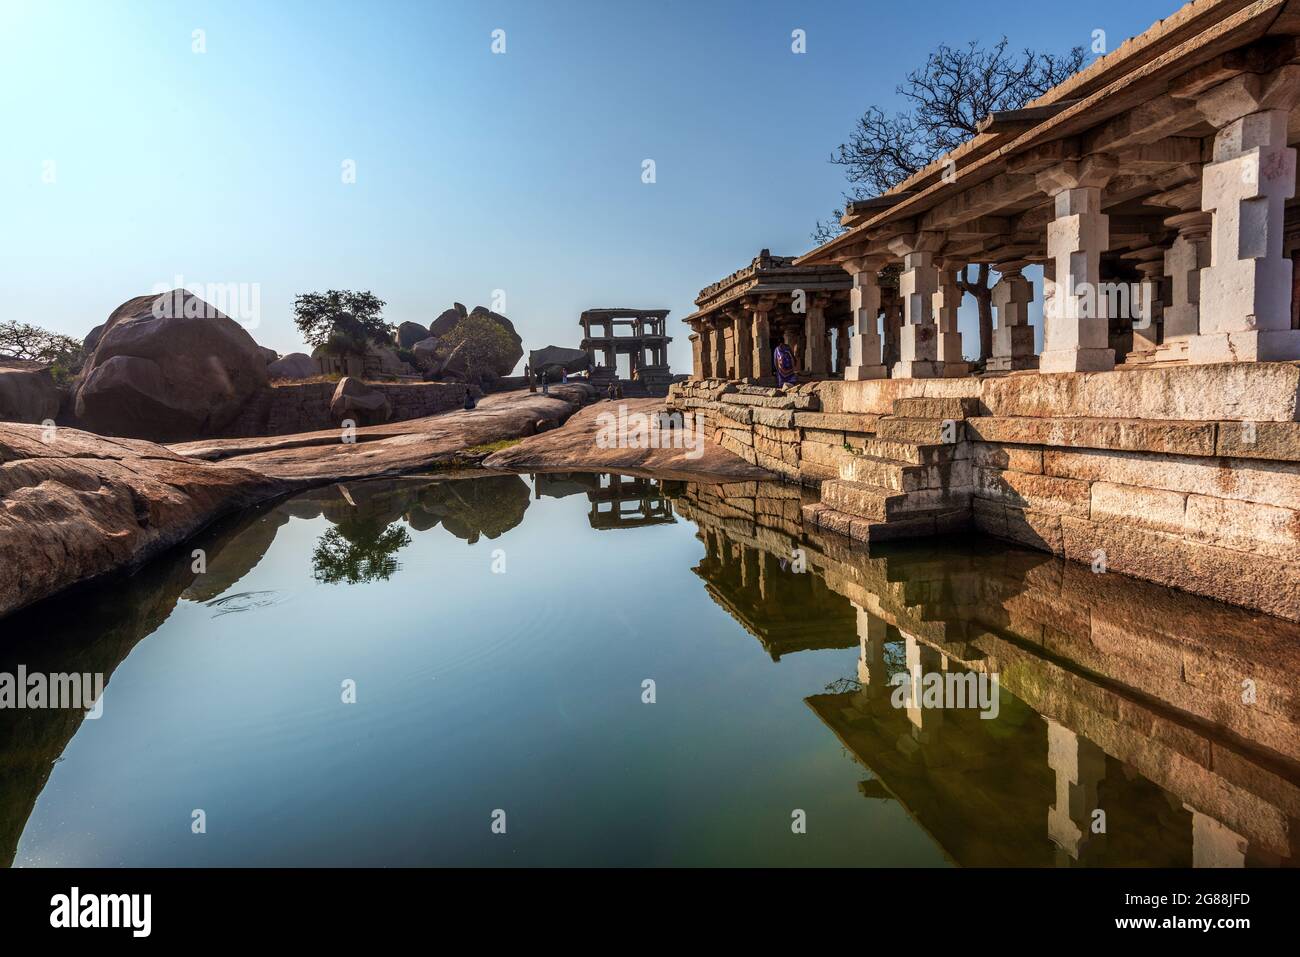 Hampi, Karnataka, India - 14 de enero de 2020 : Hermosa arquitectura antigua de los templos en la colina de Hemakuta en Hampi del siglo 14th Vijayanagara Kingdo Foto de stock